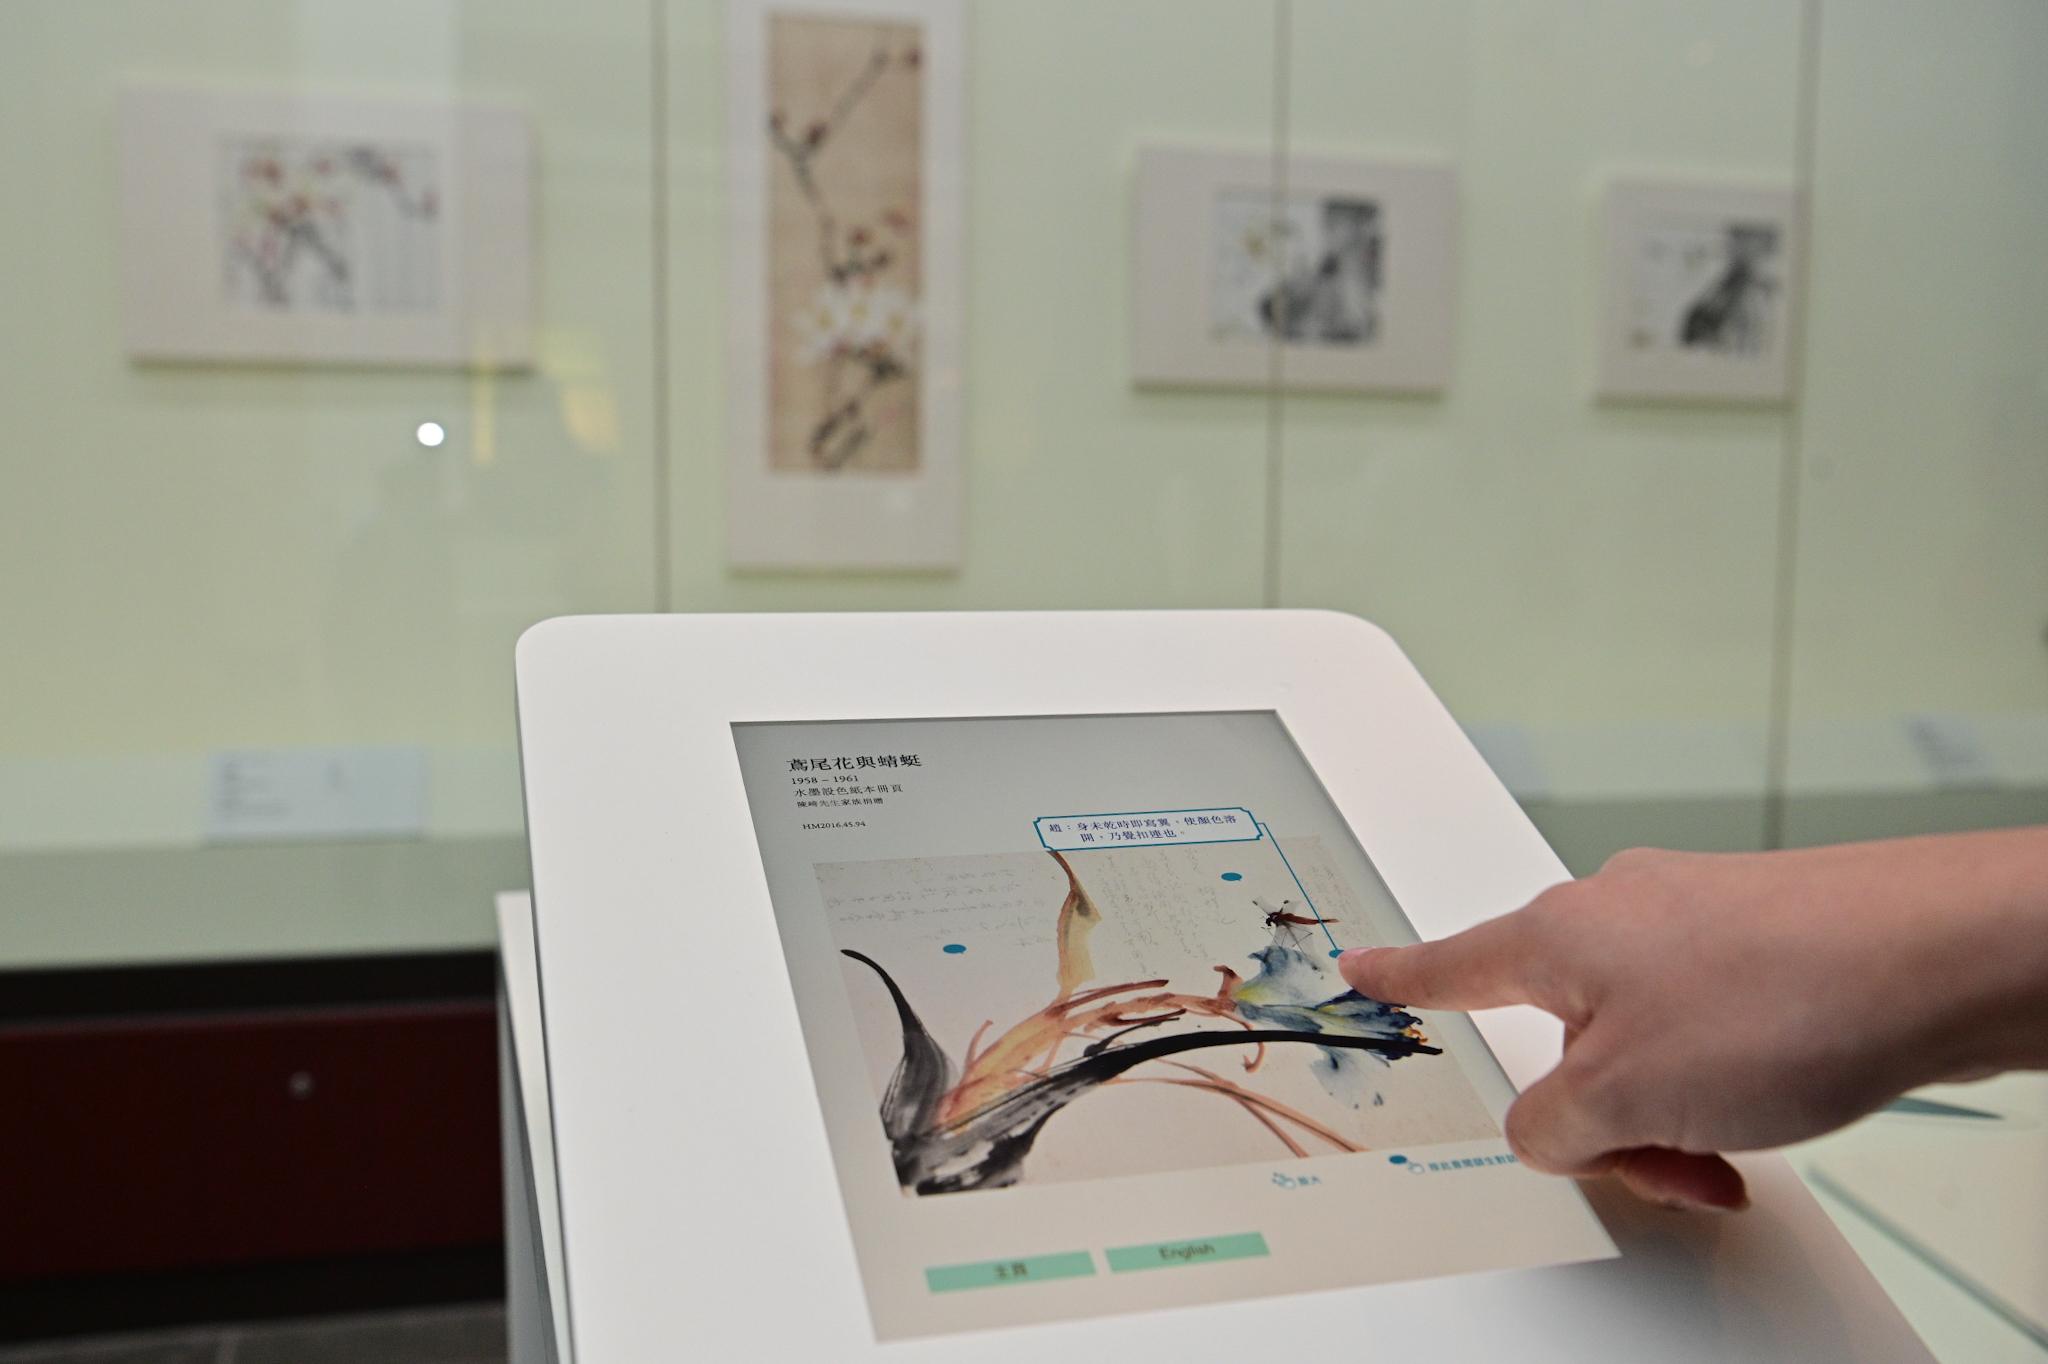 香港文化博物馆明日（九月二十一日）起举行「千里觅艺—赵少昂与陈崎师生对话」展览。图示展厅内其中一部电子互动装置，让观众可以细阅赵少昂与陈崎在画作上的互动及交流。